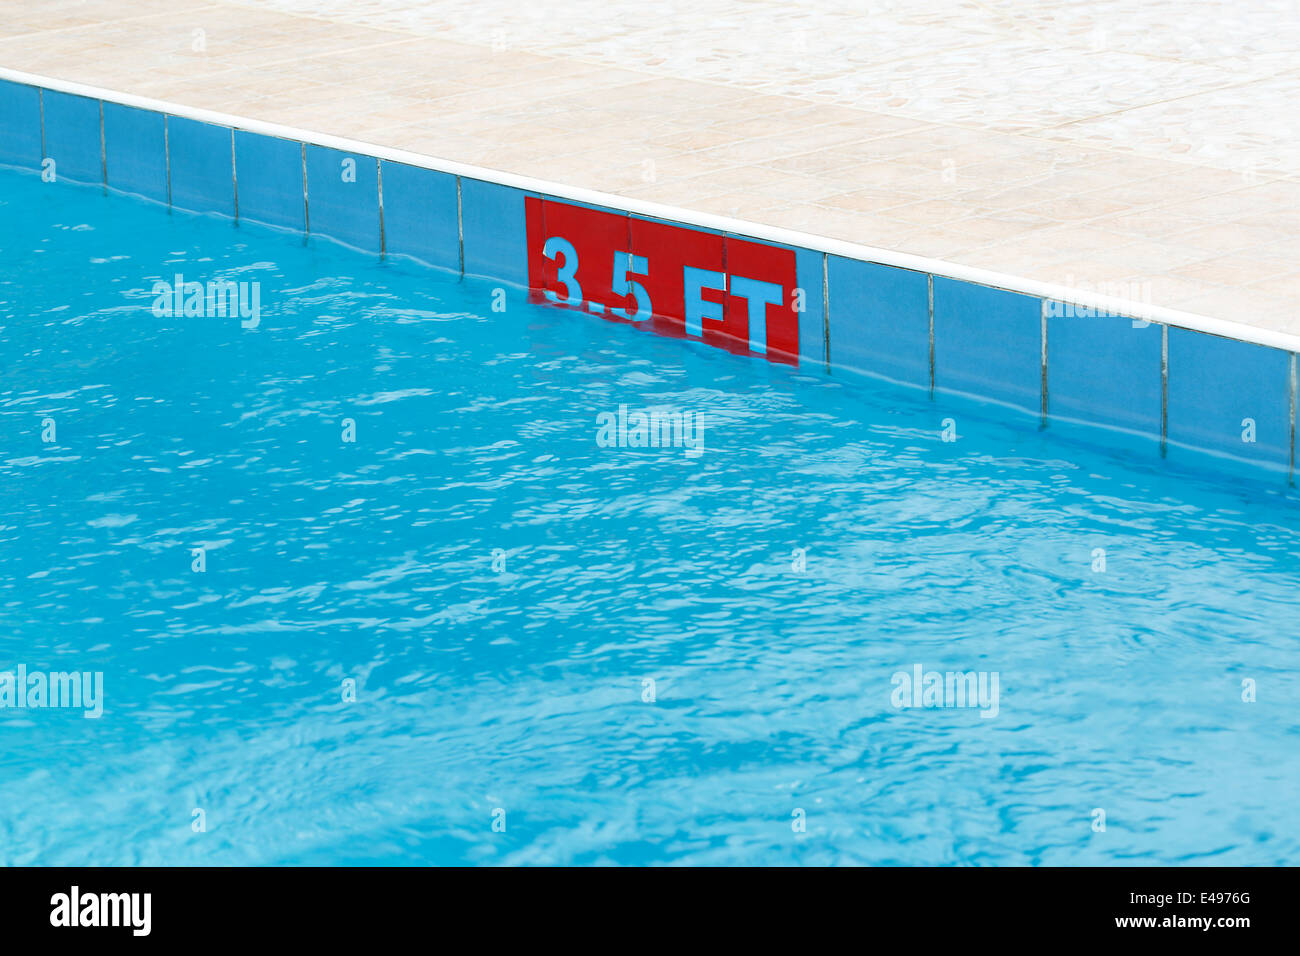 3,5 ft segno a una piscina in sun Foto Stock